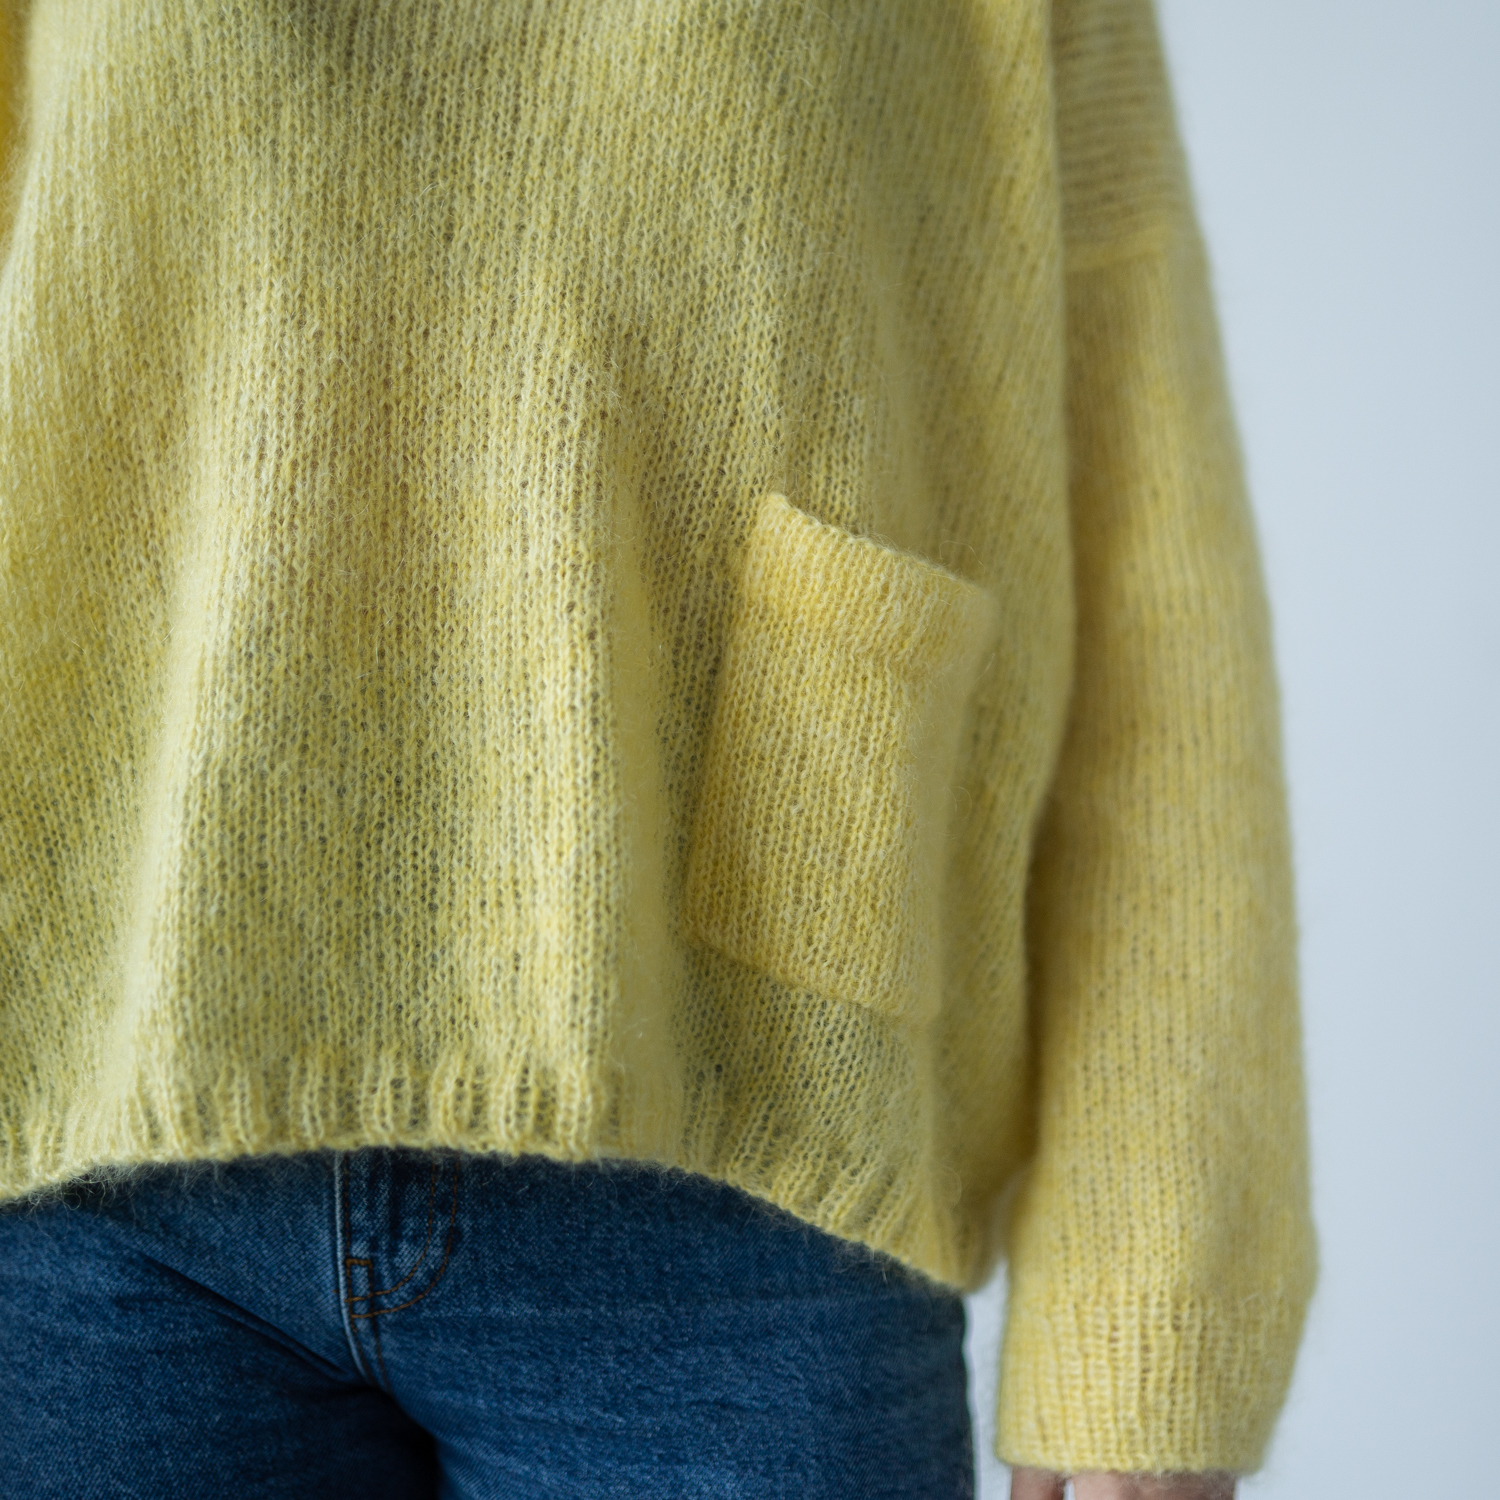  - Sophia sweater | Mohair sweater women pattern | HipKnitShop - 06/01/2023